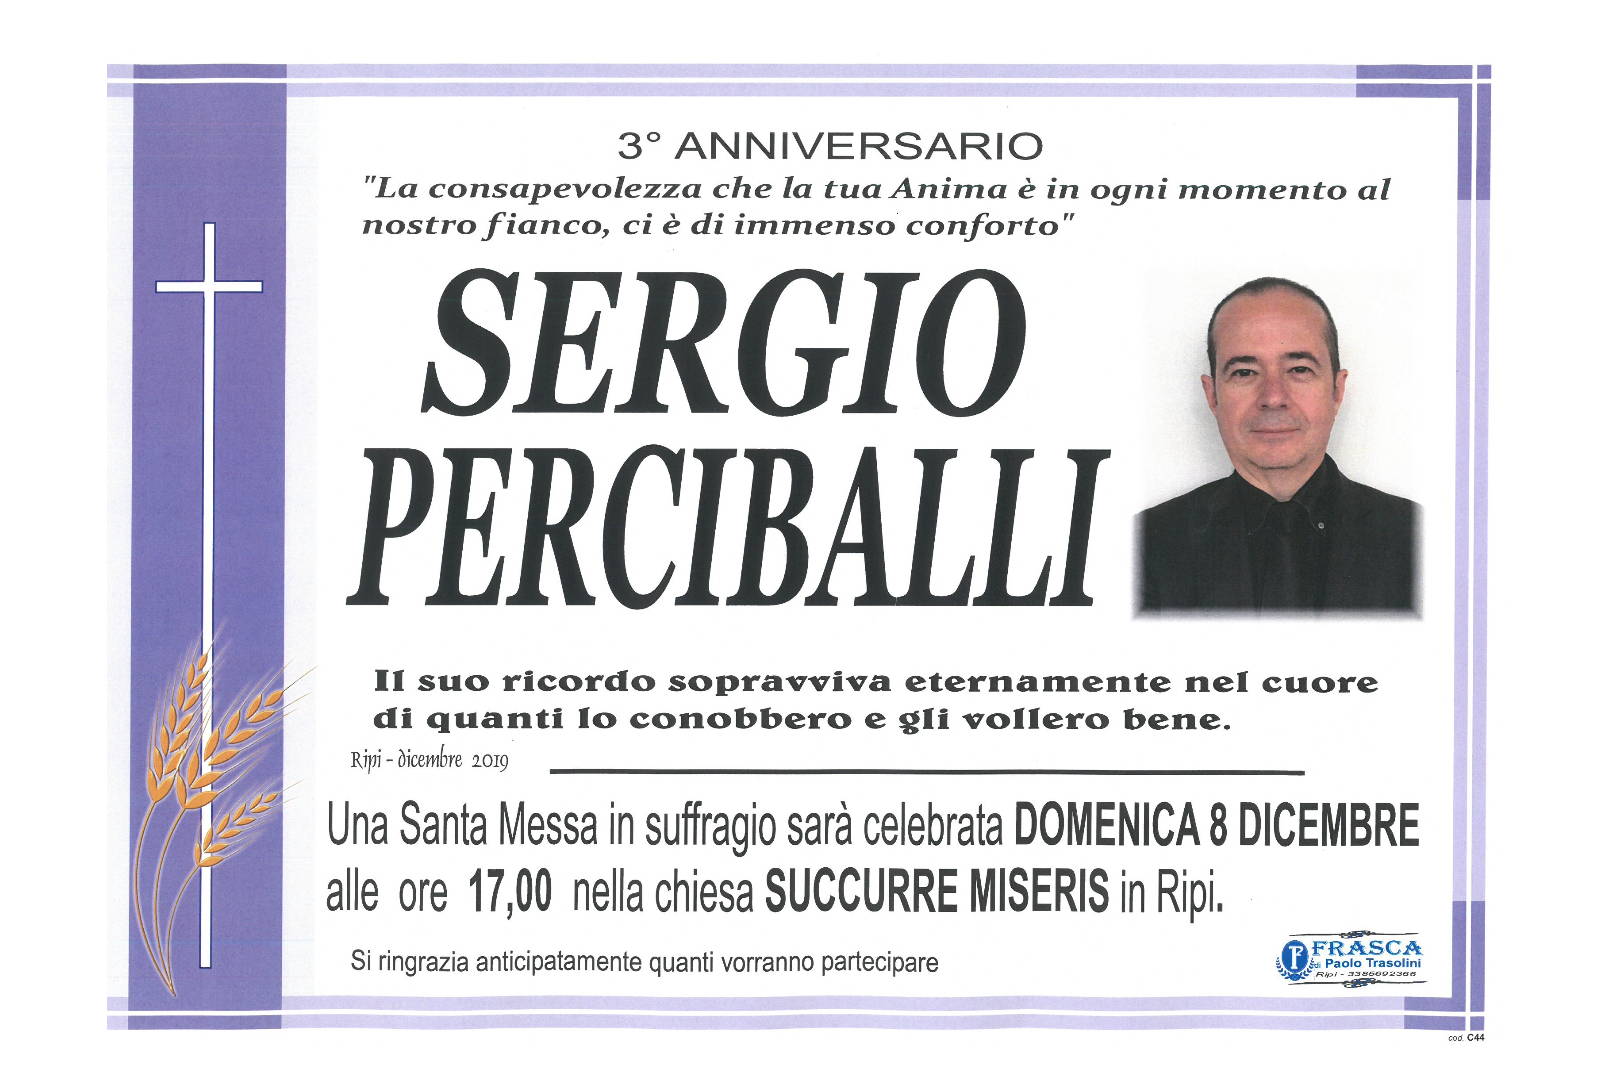 Sergio Perciballi